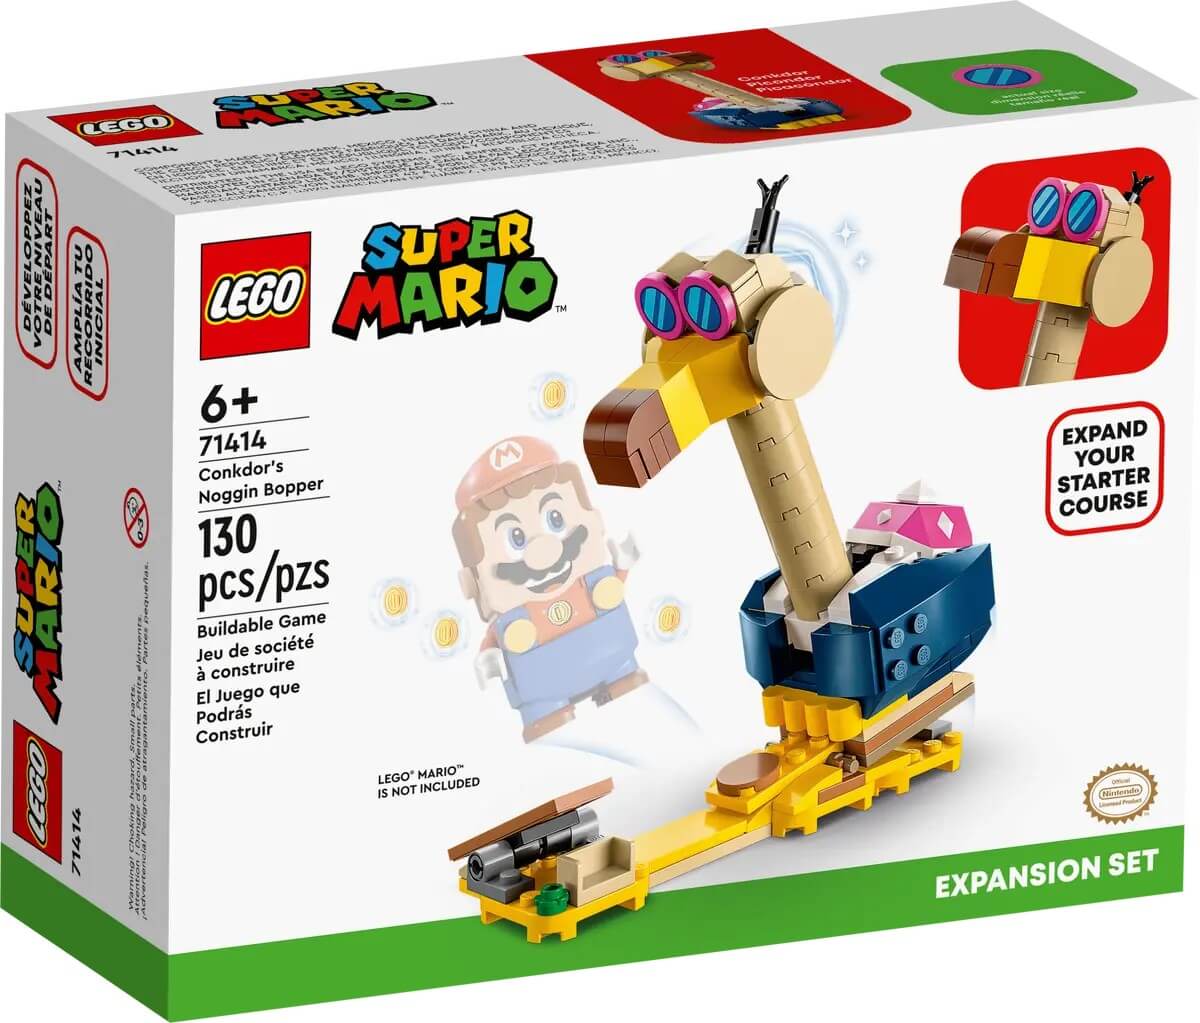 Фигурка-конструктор Lego Super Mario Conkdor's Noggin Bopper Expansion Set 71414, 130 деталей lego 71412 big bad island expansion set